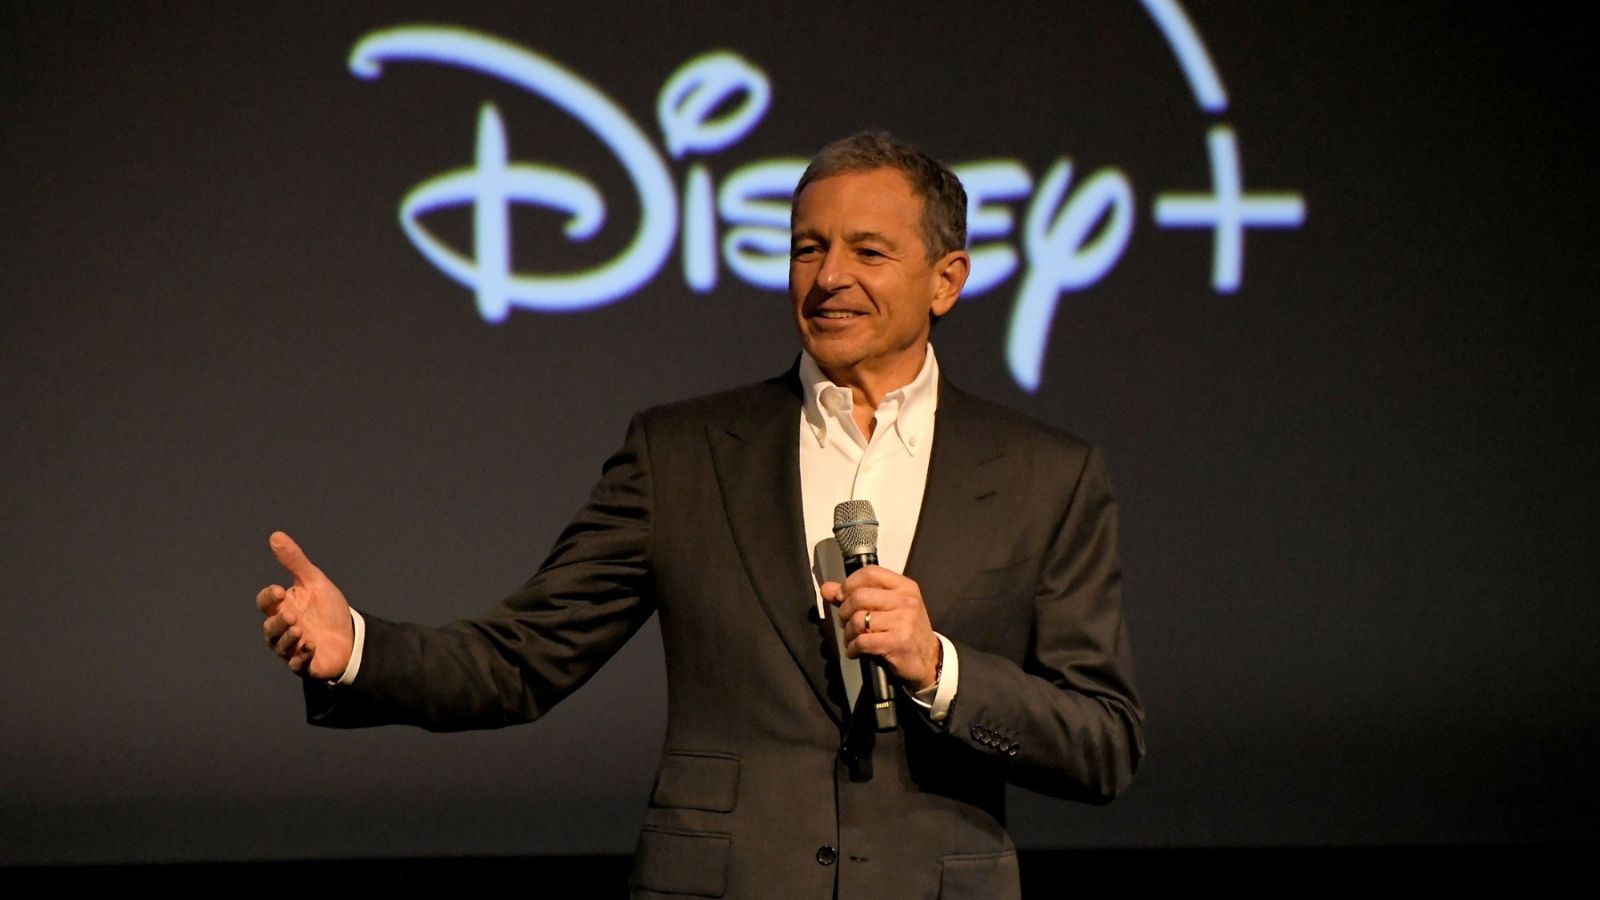 Disney despidos, más de siete mil trabajadores afectados